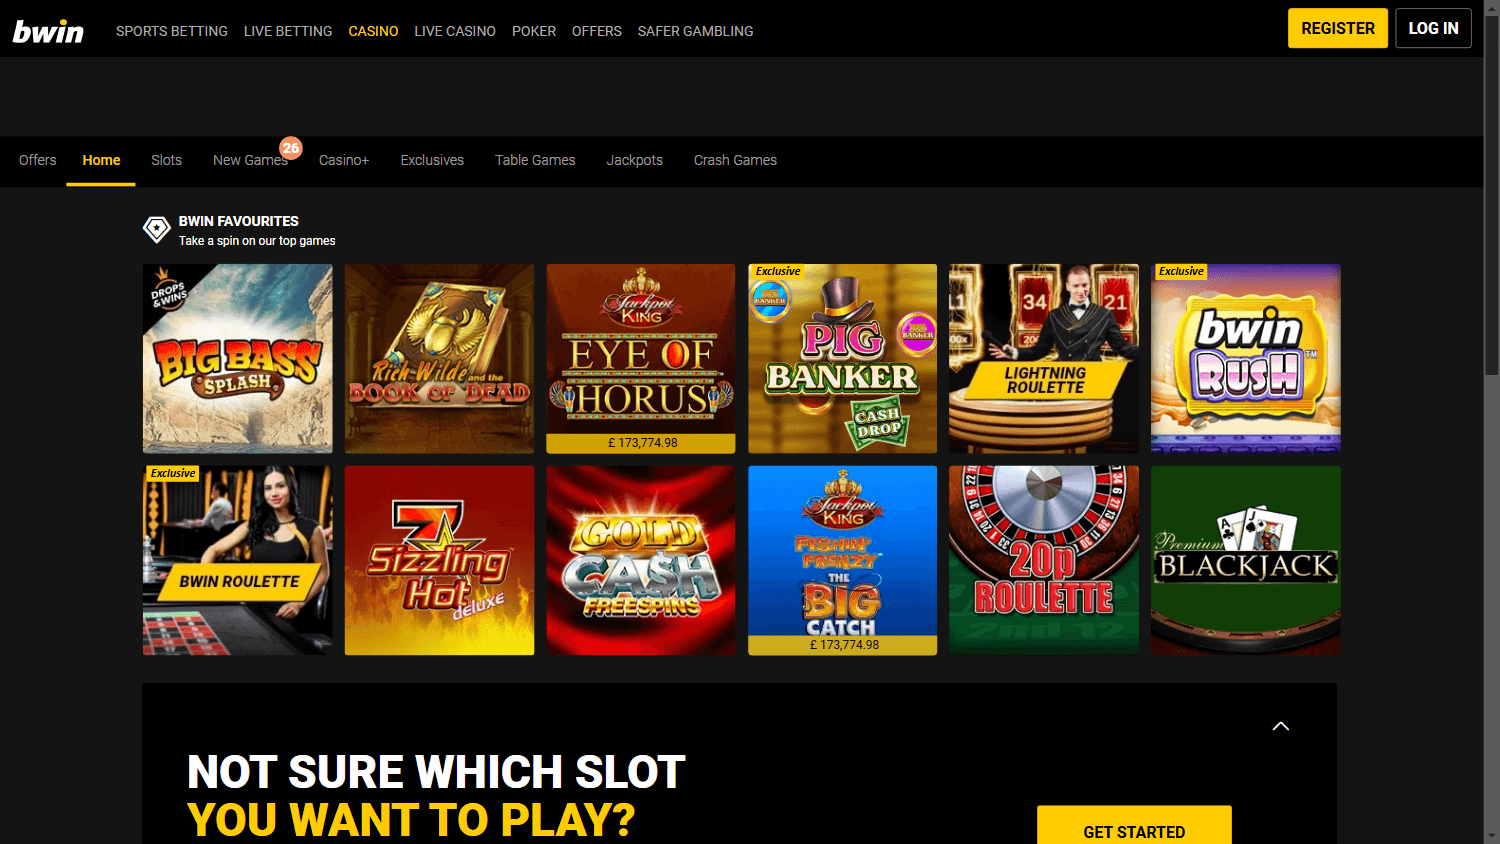 bwin_casino_promotions_desktop